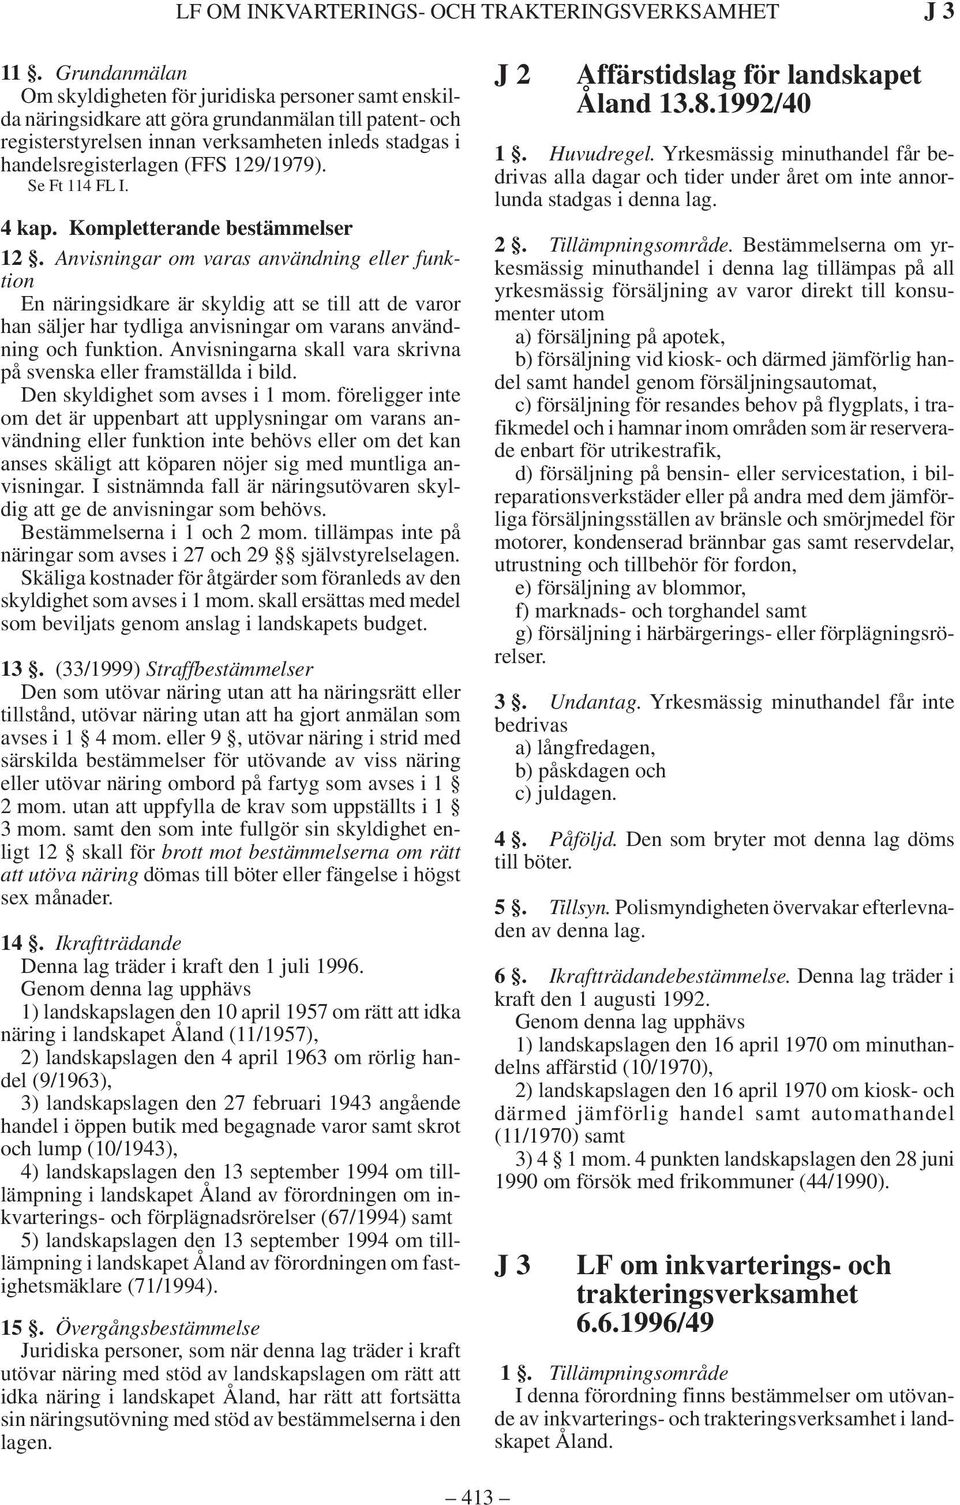 129/1979). Se Ft 114 FL I. 4 kap. Kompletterande bestämmelser 12.